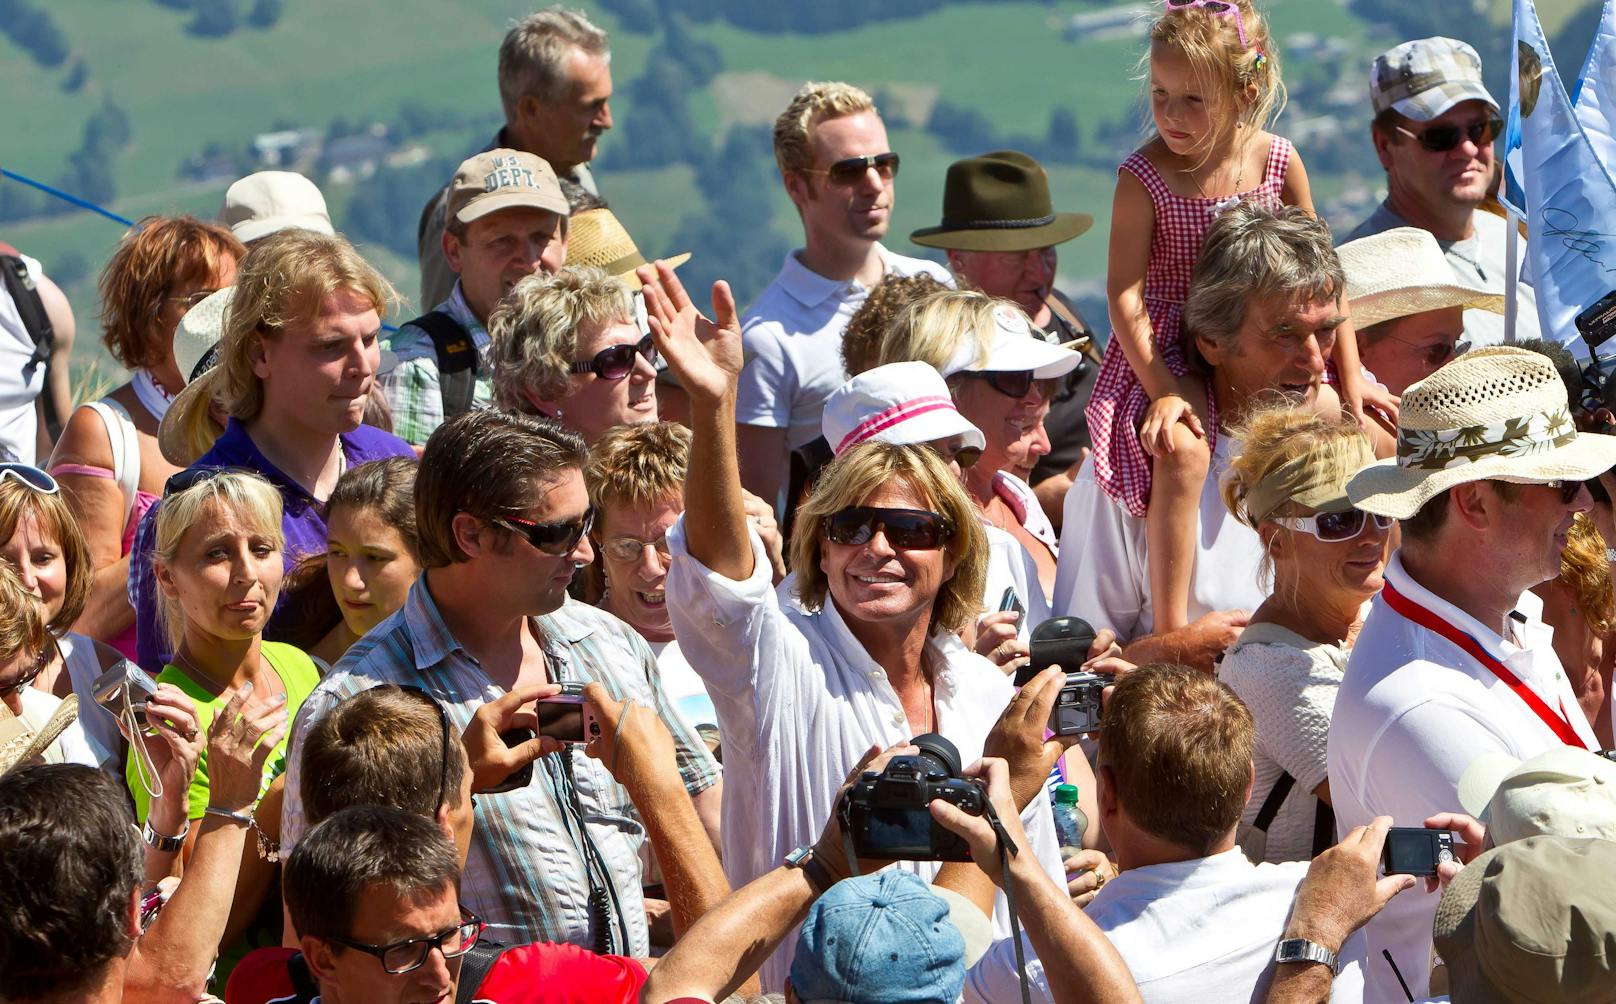 10 Jahre lang feierte der Sänger seine legendären Open Airs in Kitzbühel und veranstaltete die Hansi Hinterseer Fan Wanderungen am Hahnenkamm, zu der jährlich 11.000 Fans kamen.